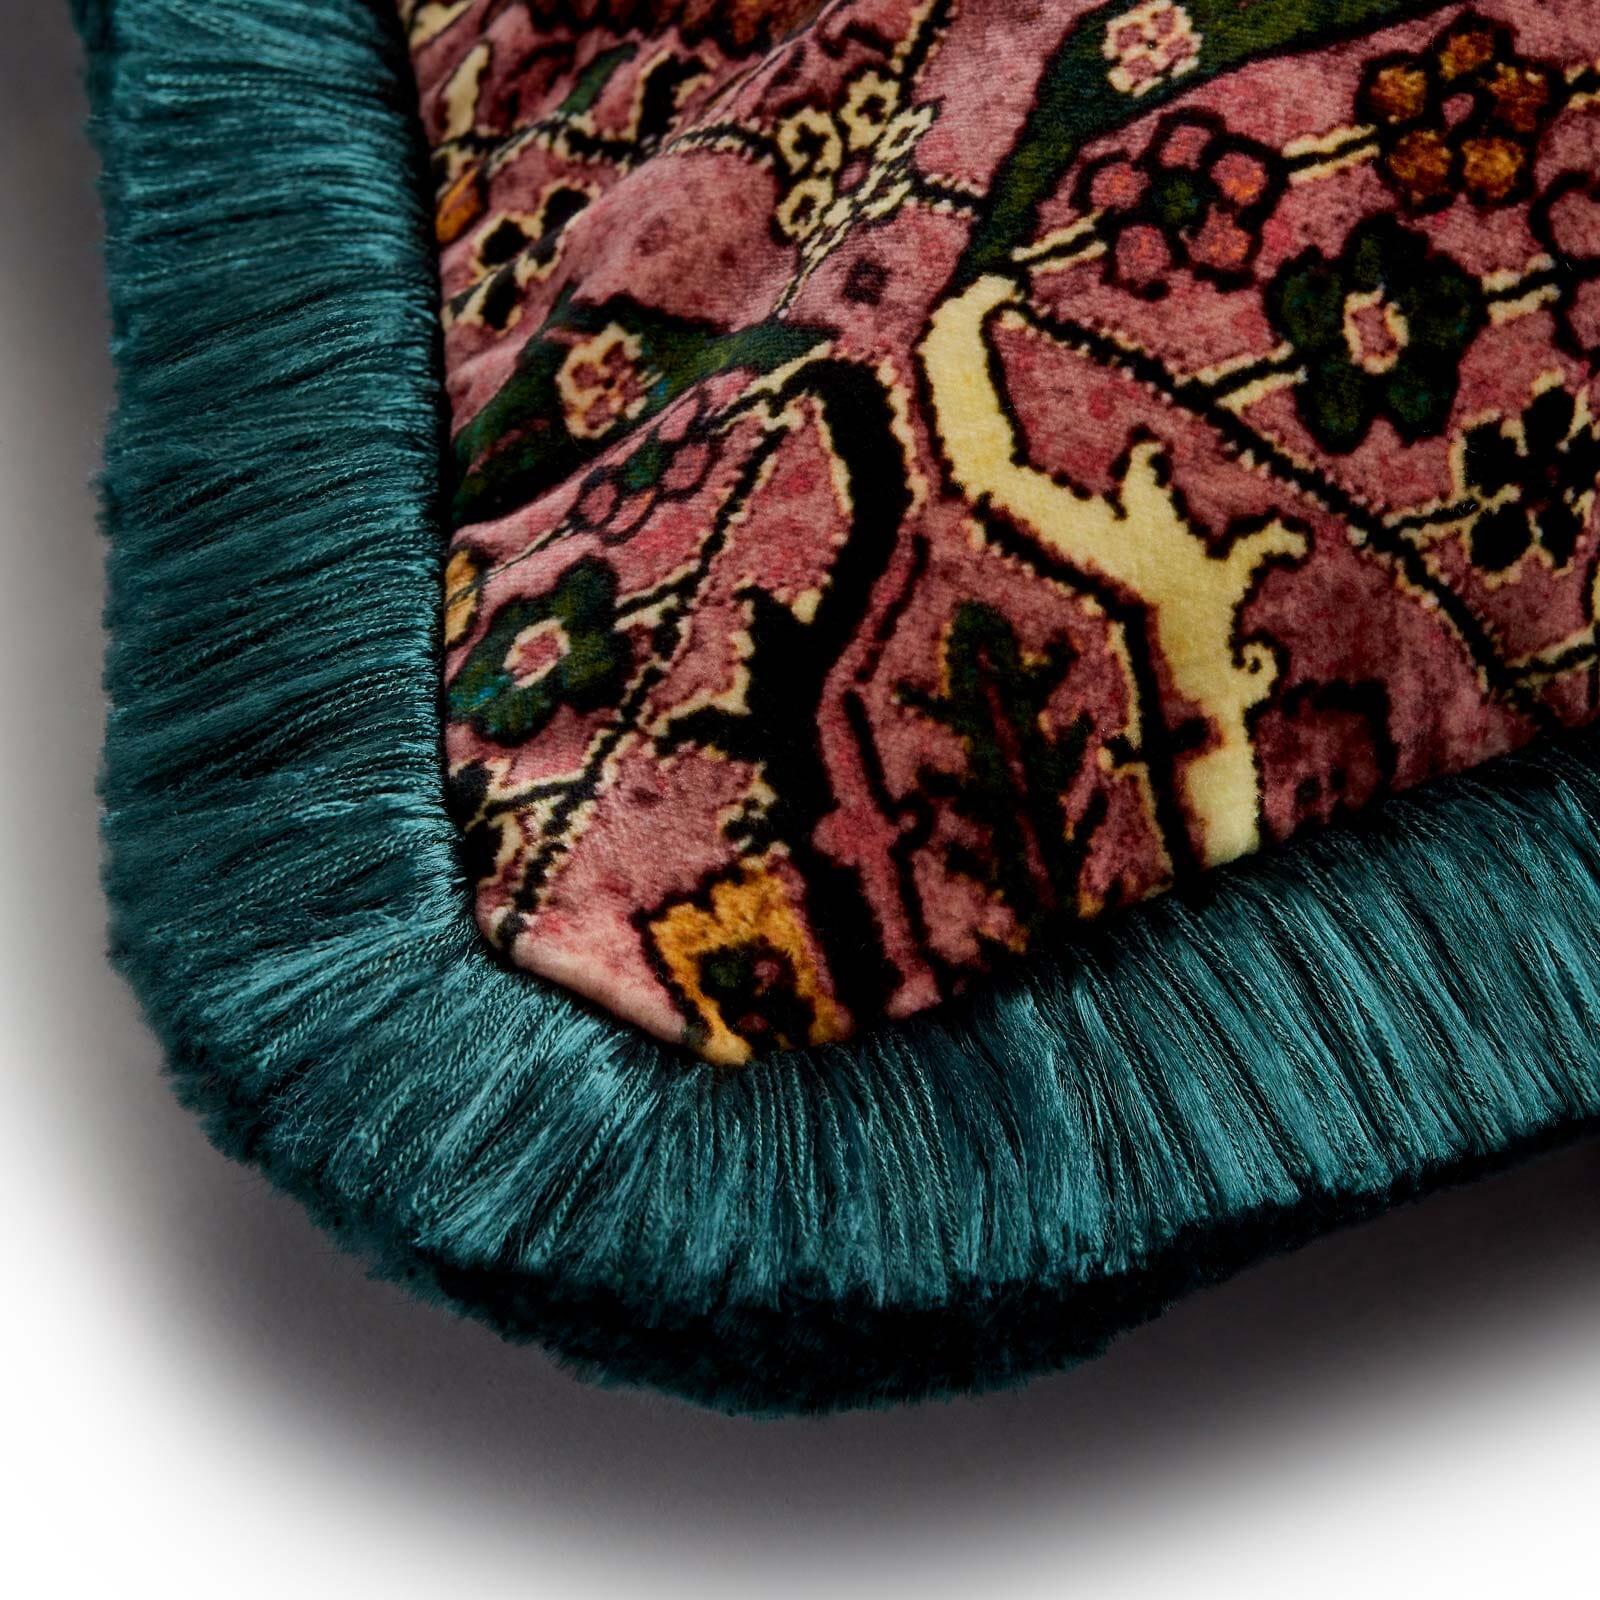 Inspiré par les souks de Marrakech, MEY MEH est imprégné d'une palette de roses et de turquoises, offrant une version moderne de ce motif de tapis classique du 17e siècle. En velours somptueux, ajoutez une touche d'histoire à votre intérieur avec ce